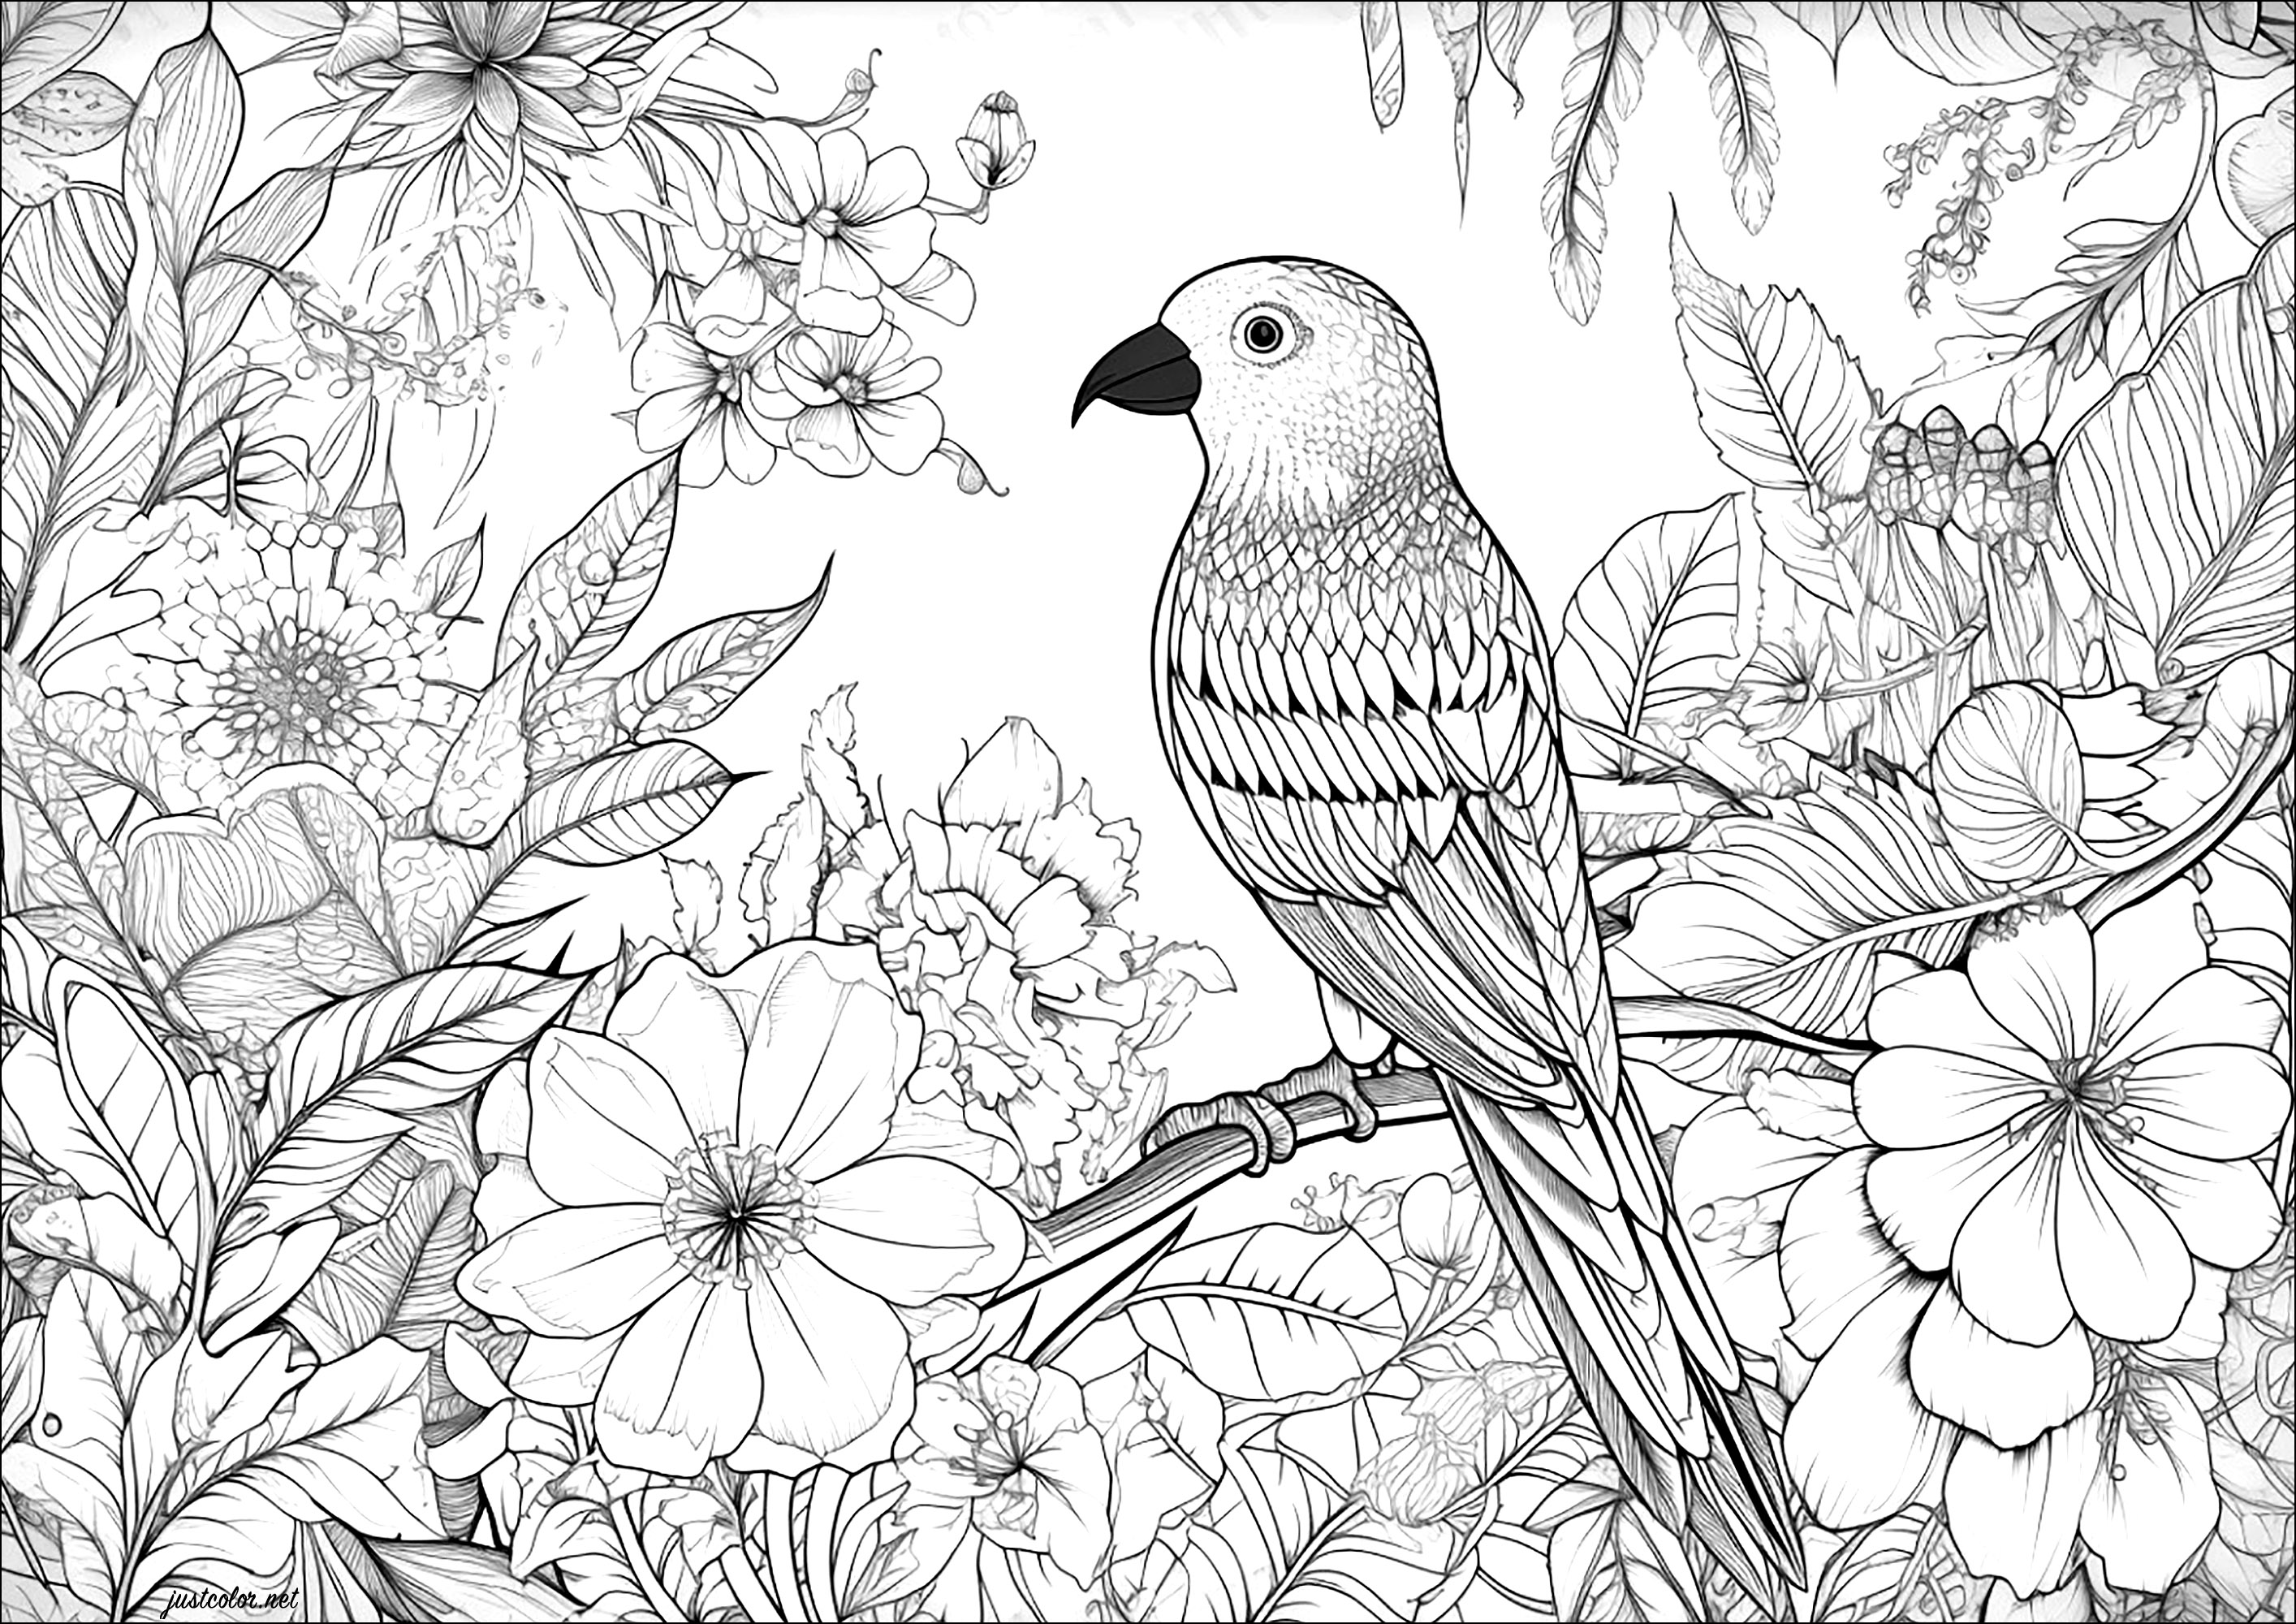 Bel oiseau et fond fleuri. Un coloriage avec de nombreux détails à colorier, dans l'oiseau et dans les fleurs en arrière-plan